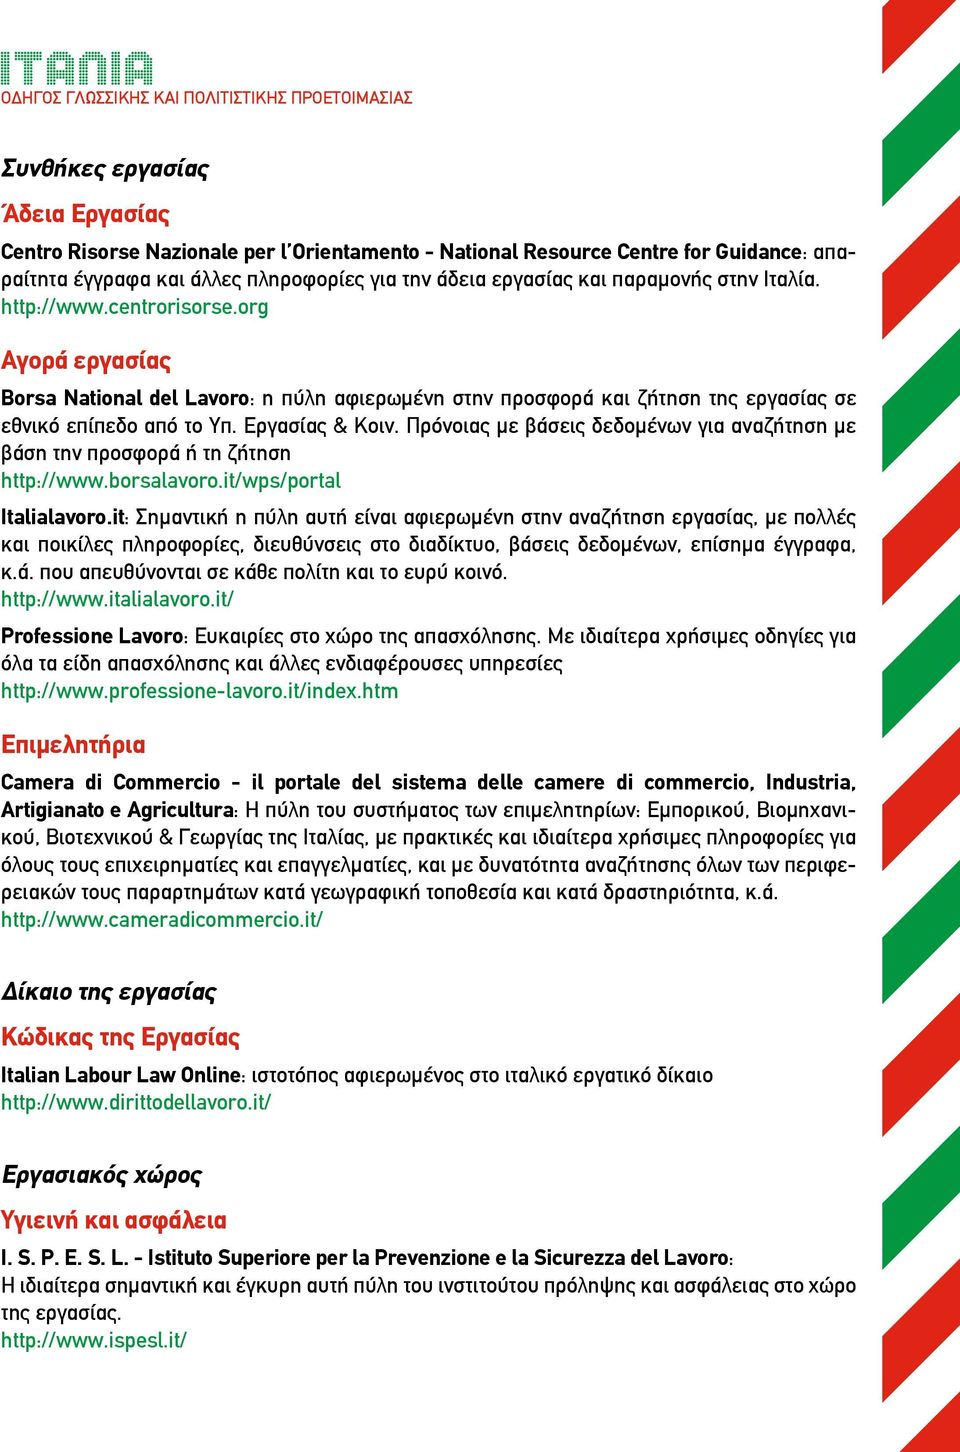 Πρόνοιας με βάσεις δεδομένων για αναζήτηση με βάση την προσφορά ή τη ζήτηση http://www.borsalavoro.it/wps/portal Italialavoro.